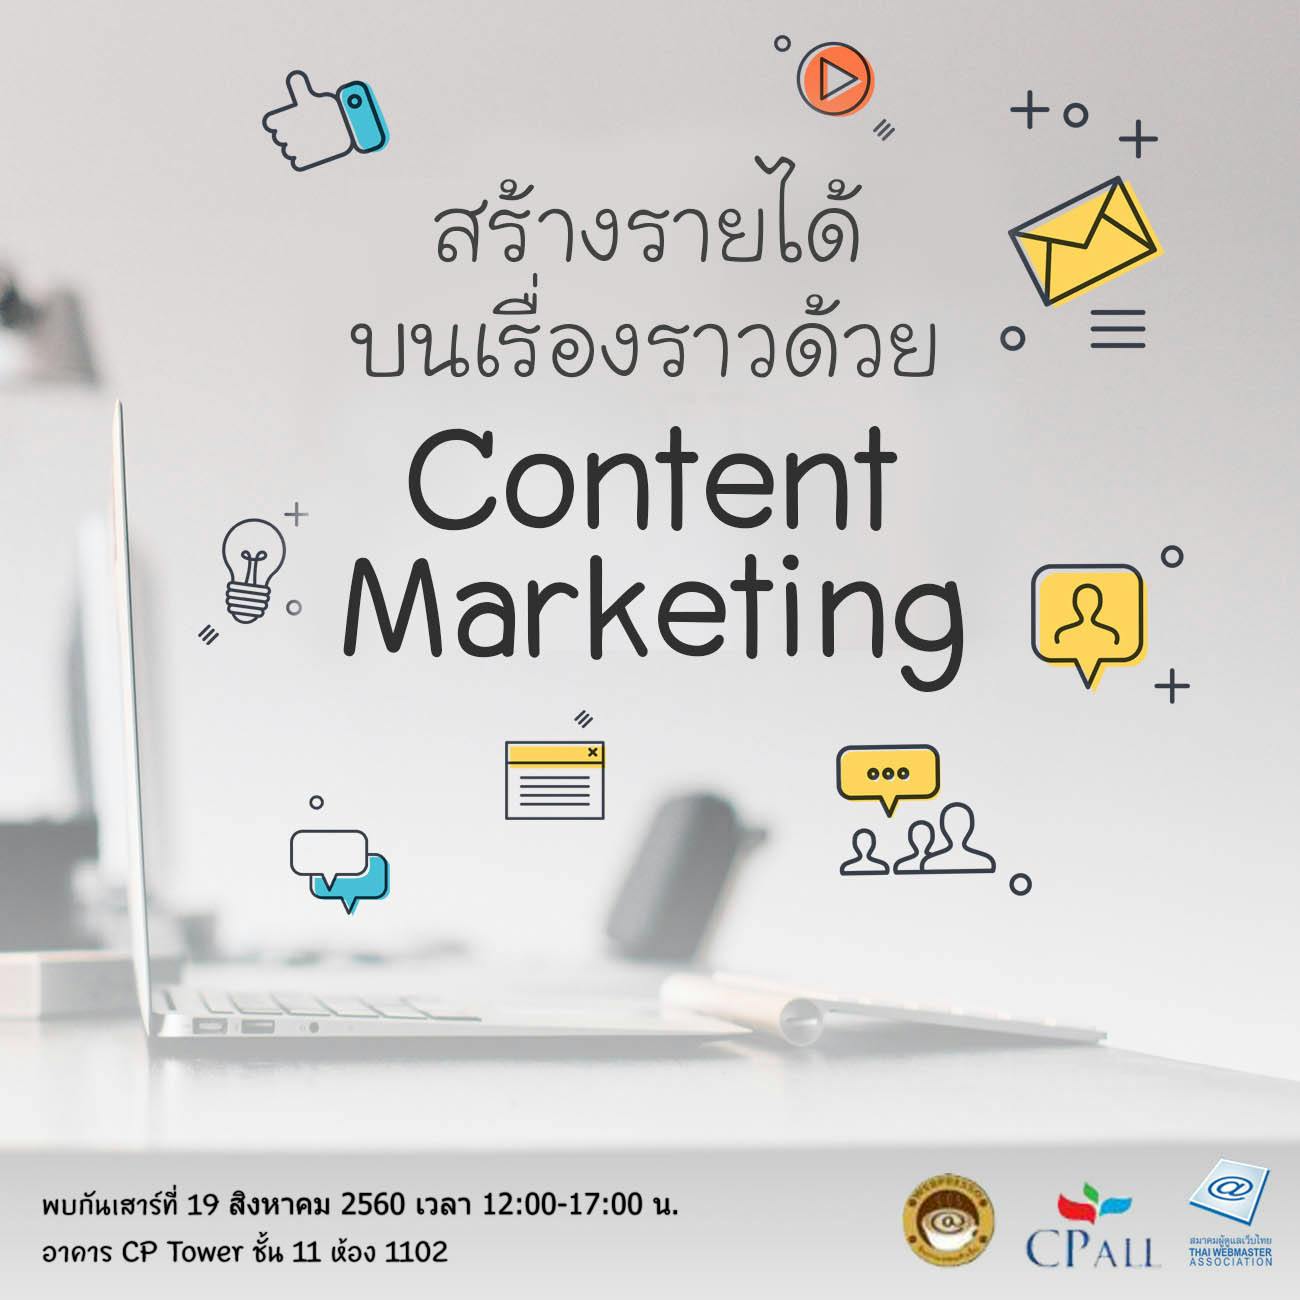 Cover Image for จิบกาแฟคนทำเว็บหัวข้อ “สร้างรายได้ บนเรื่องราวด้วย Content Marketing”